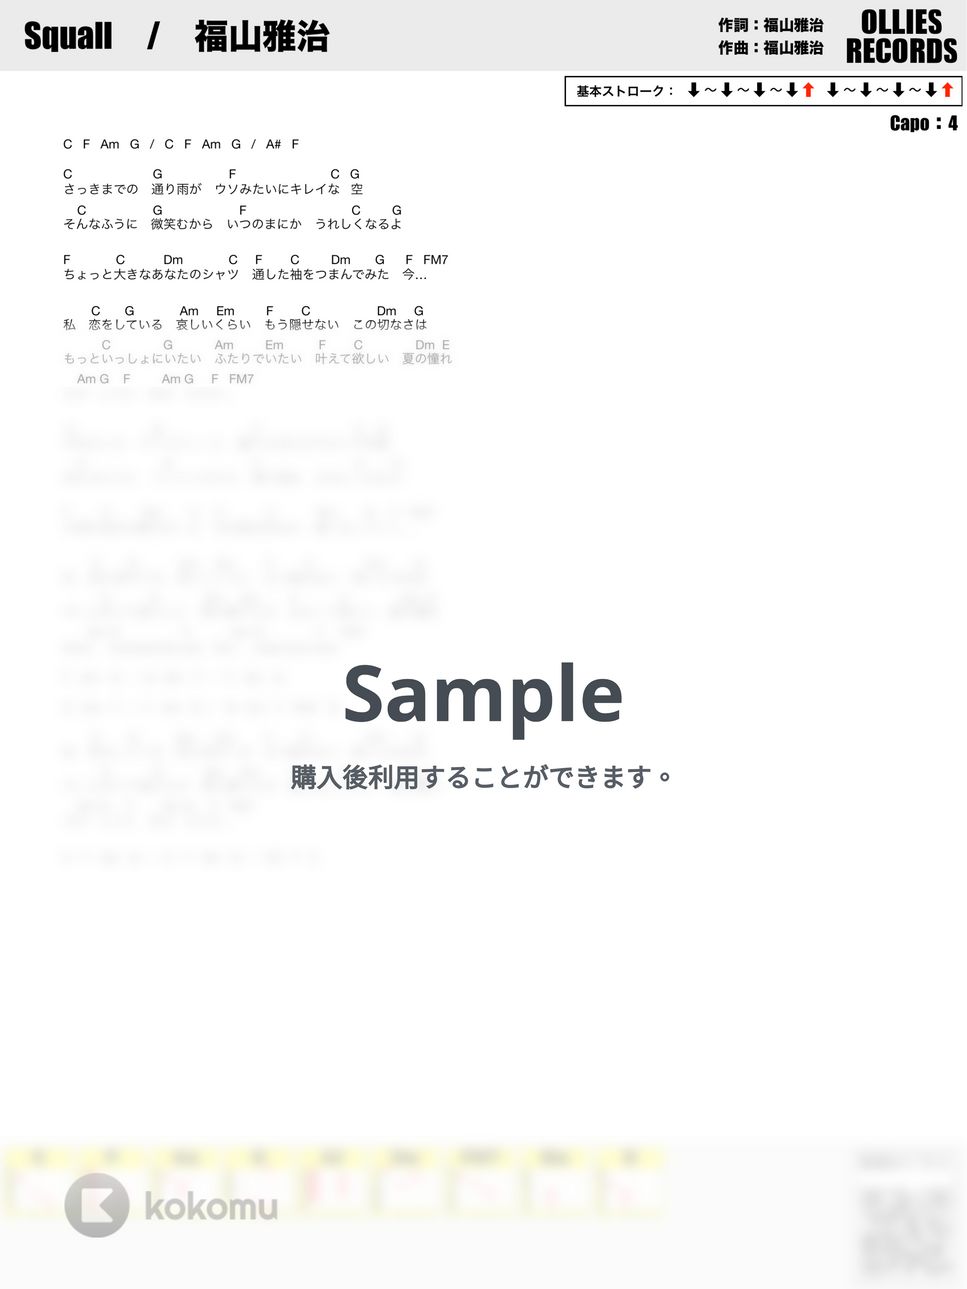 福山雅治 - Squall by オーリーズの音楽室